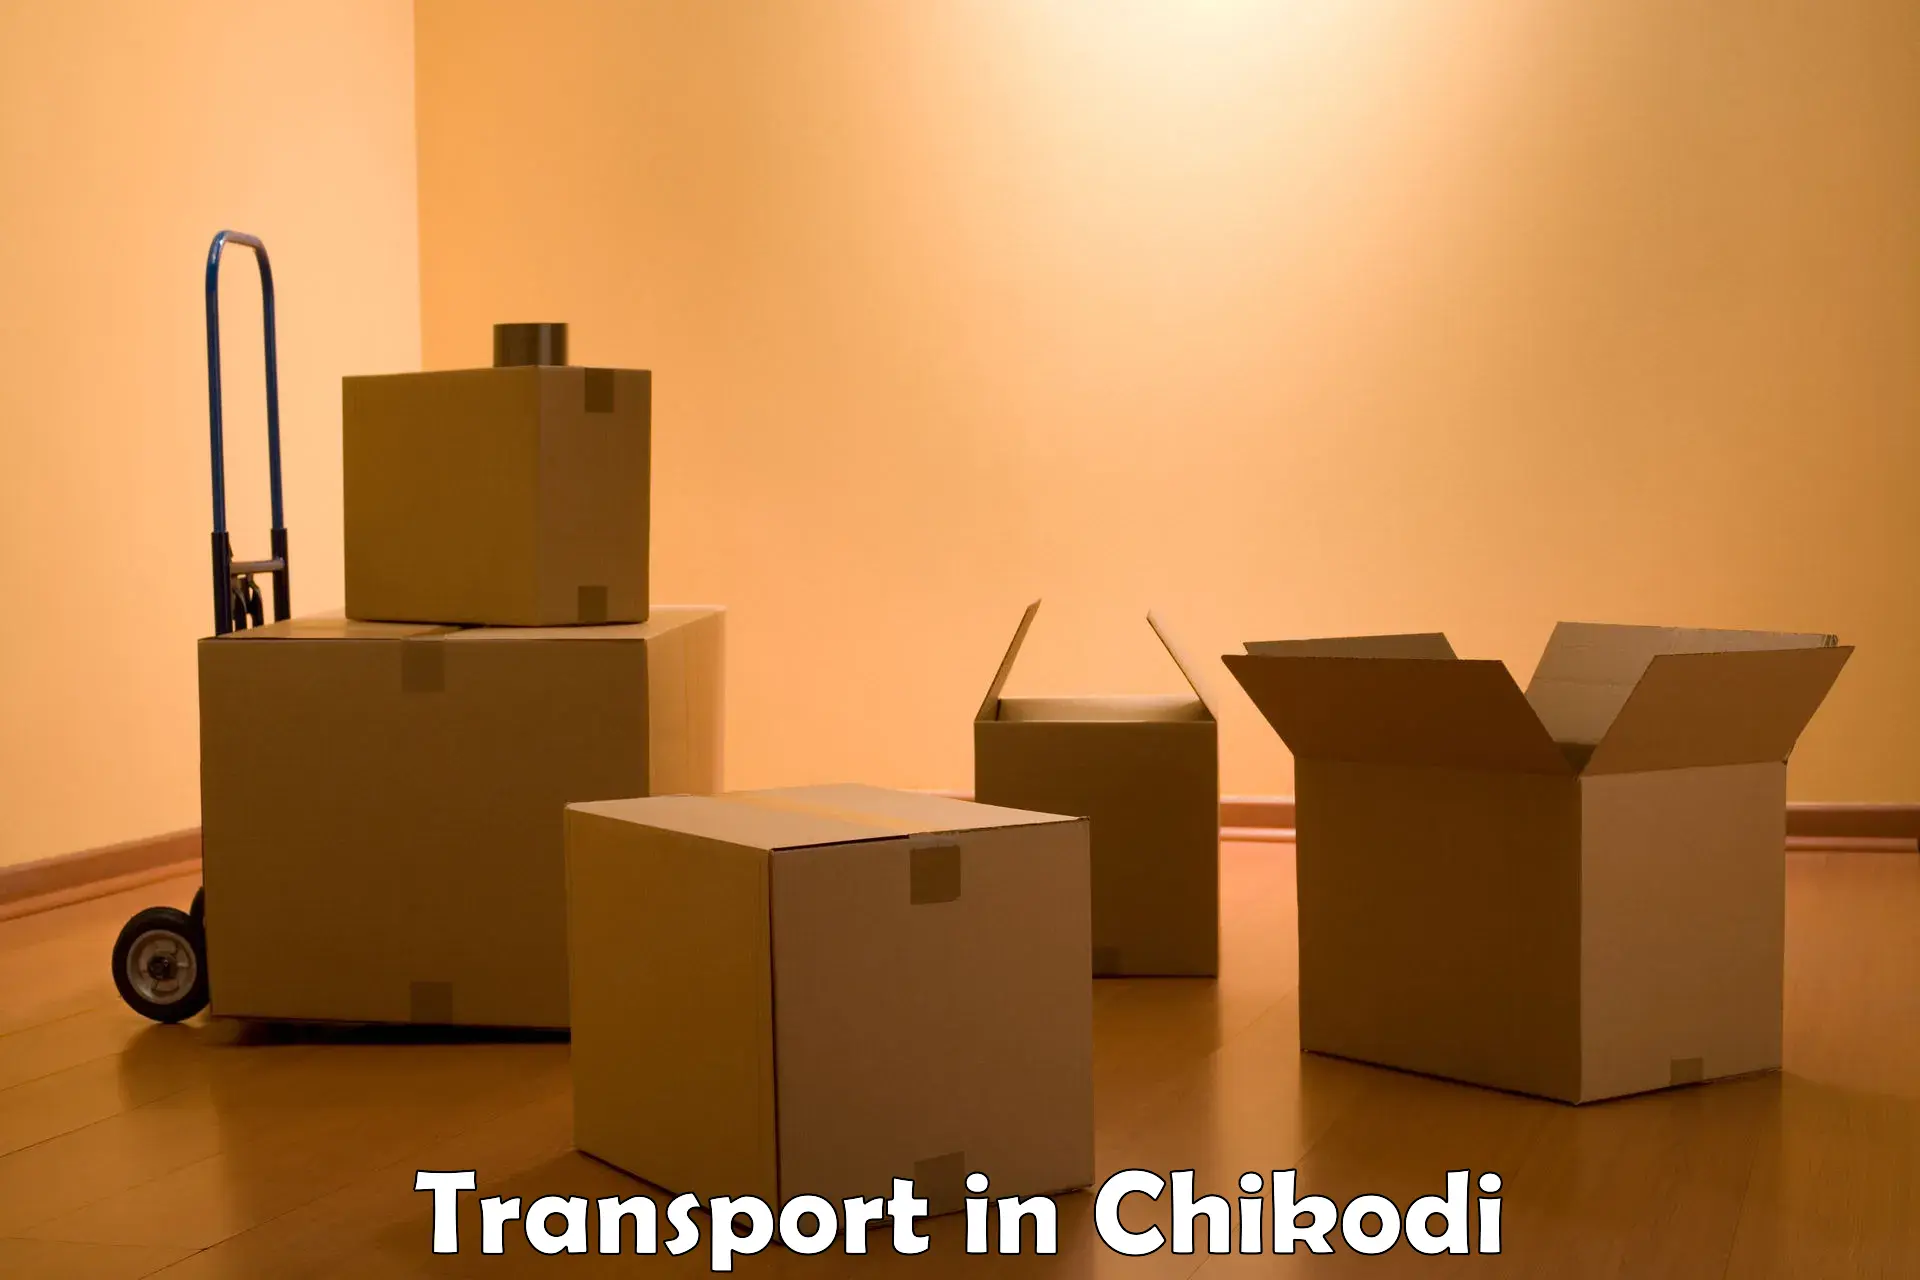 Intercity transport in Chikodi